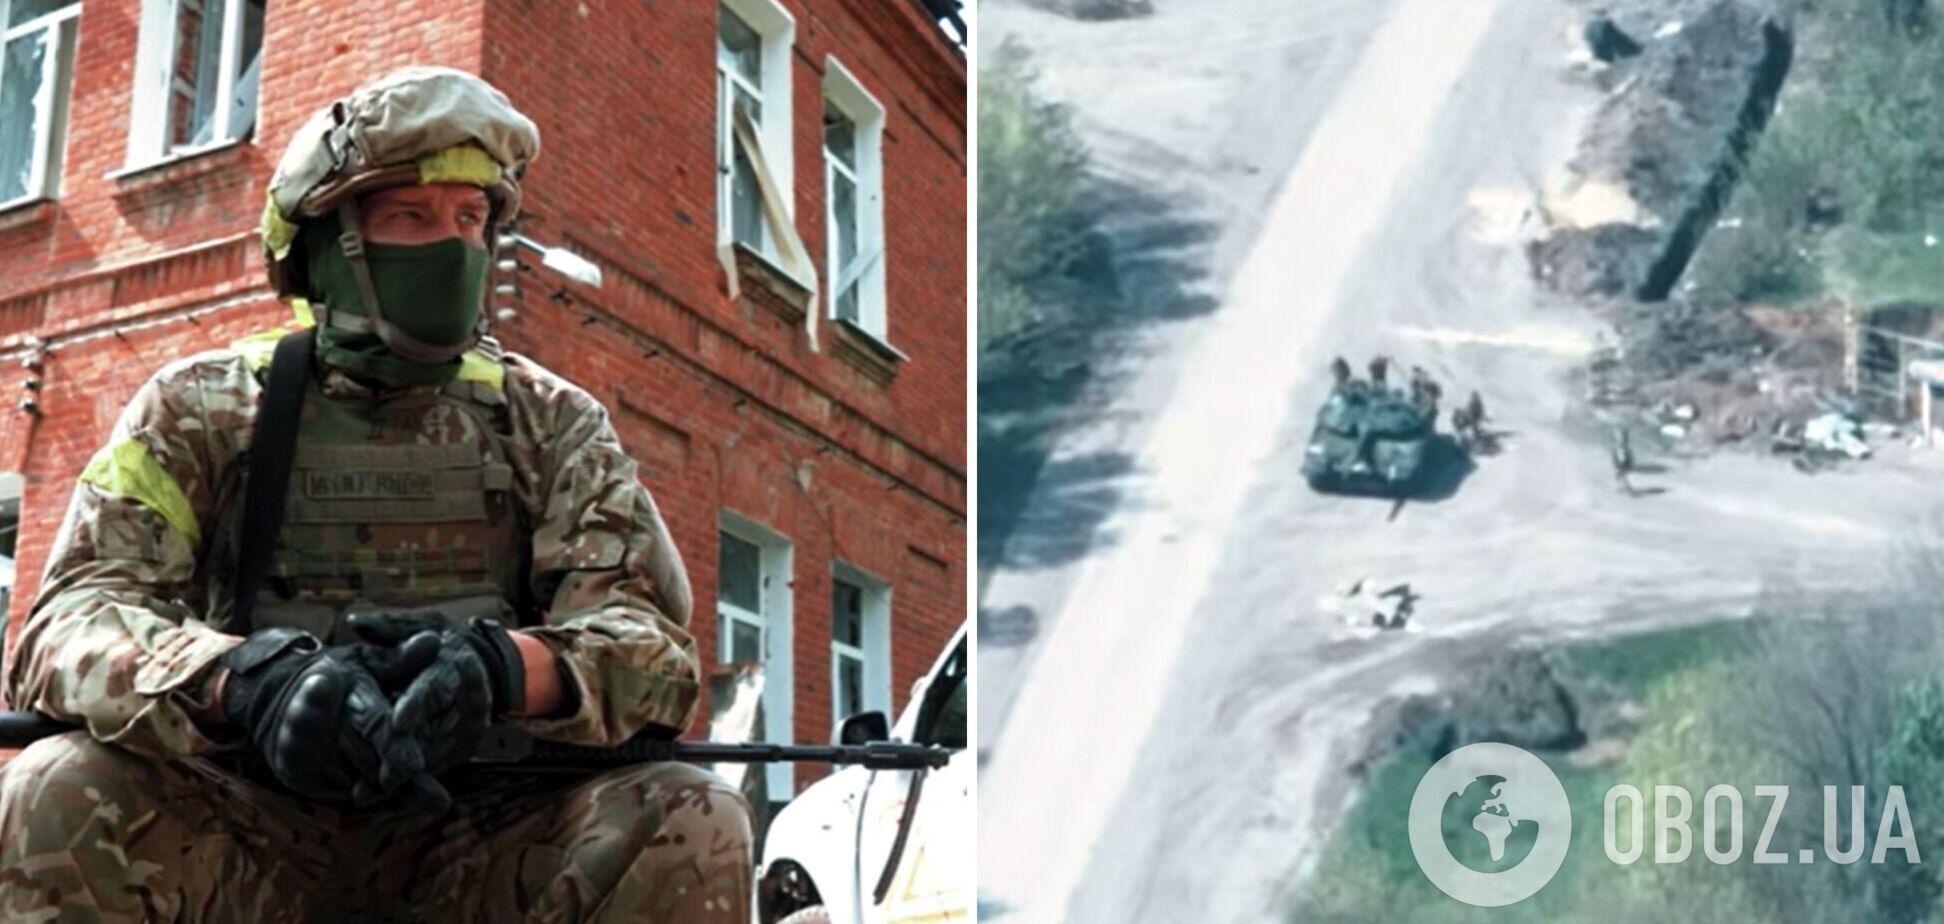 Українські прикордонники розповіли, як вибивали ворога на Харківщині, та показали унікальні бойові кадри. Відео